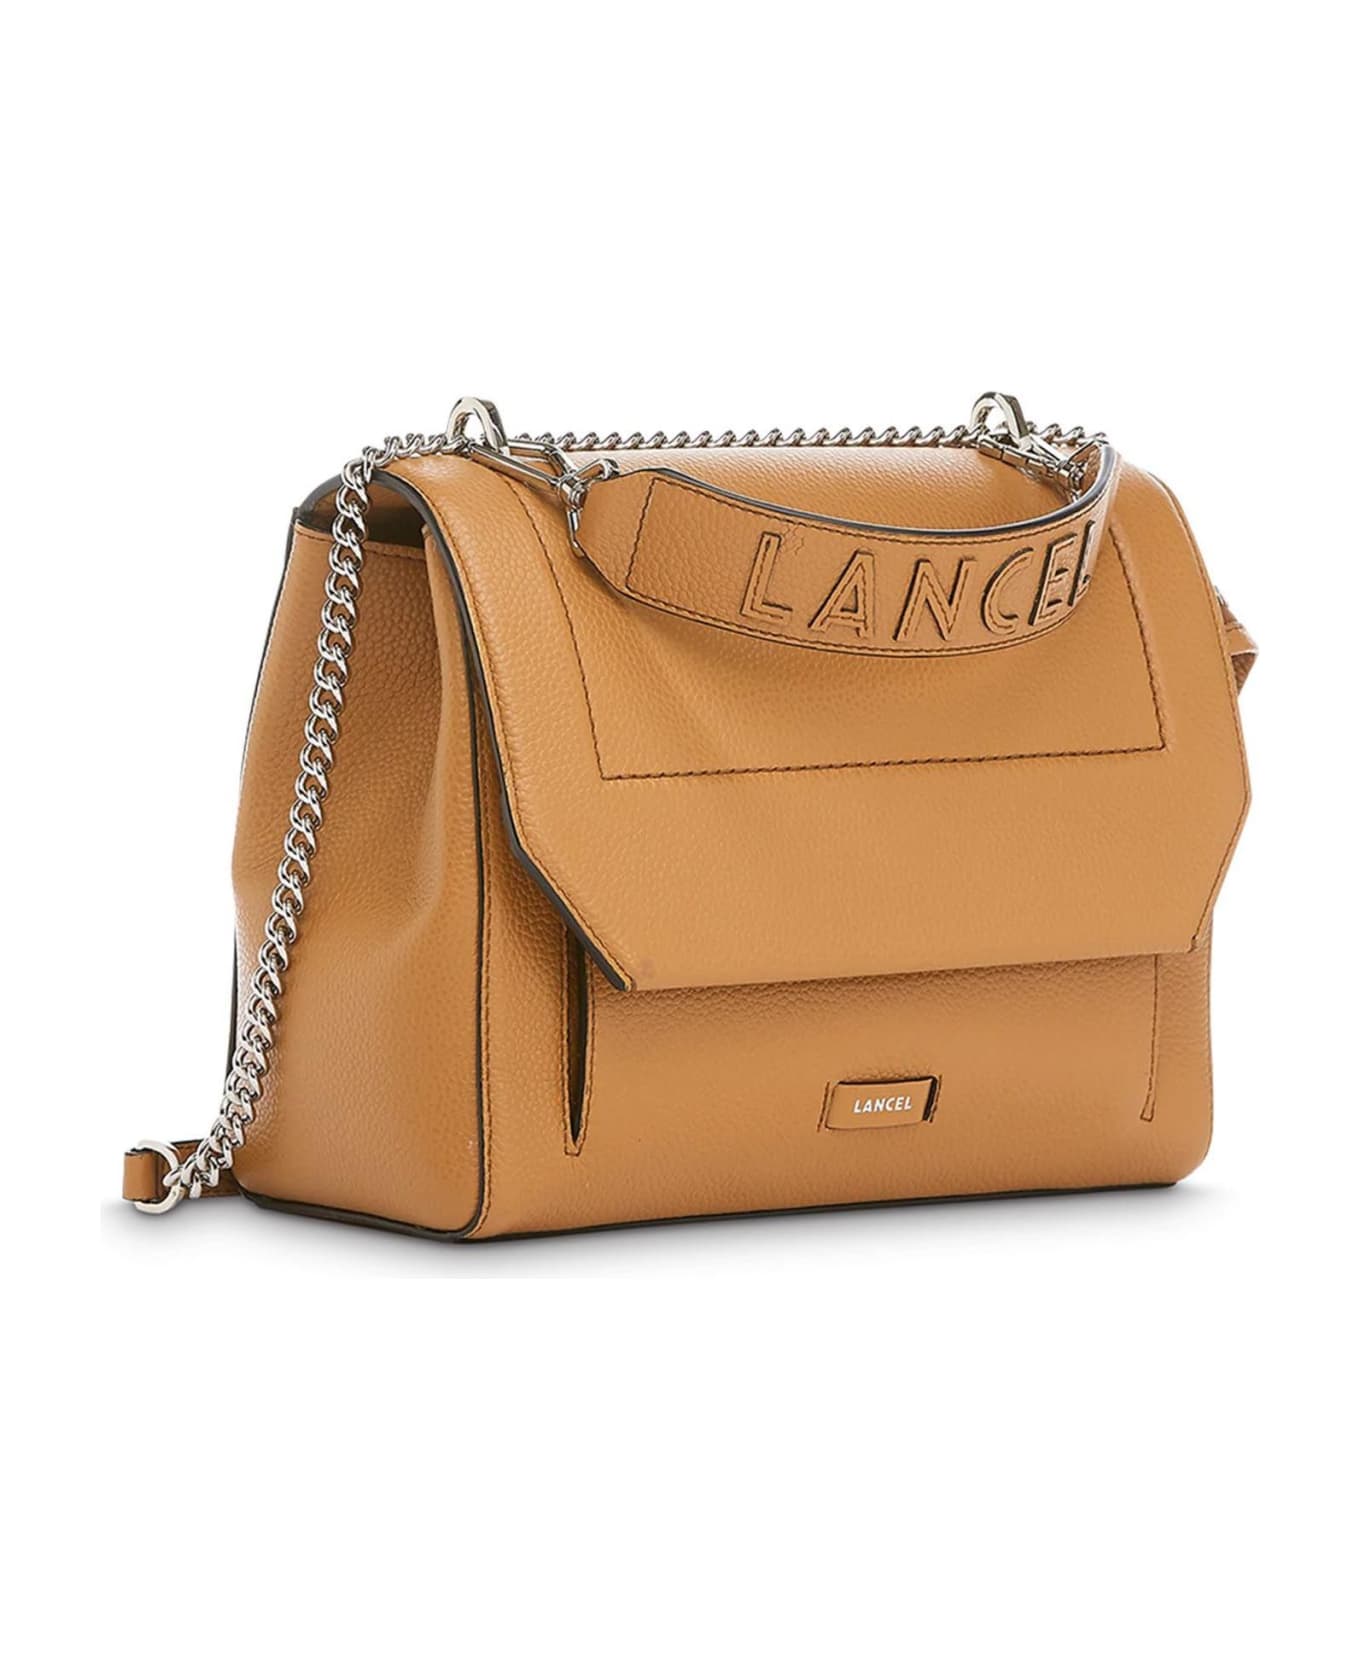 Lancel Camel Grained Leather Shoulder Bag - Beige ショルダーバッグ